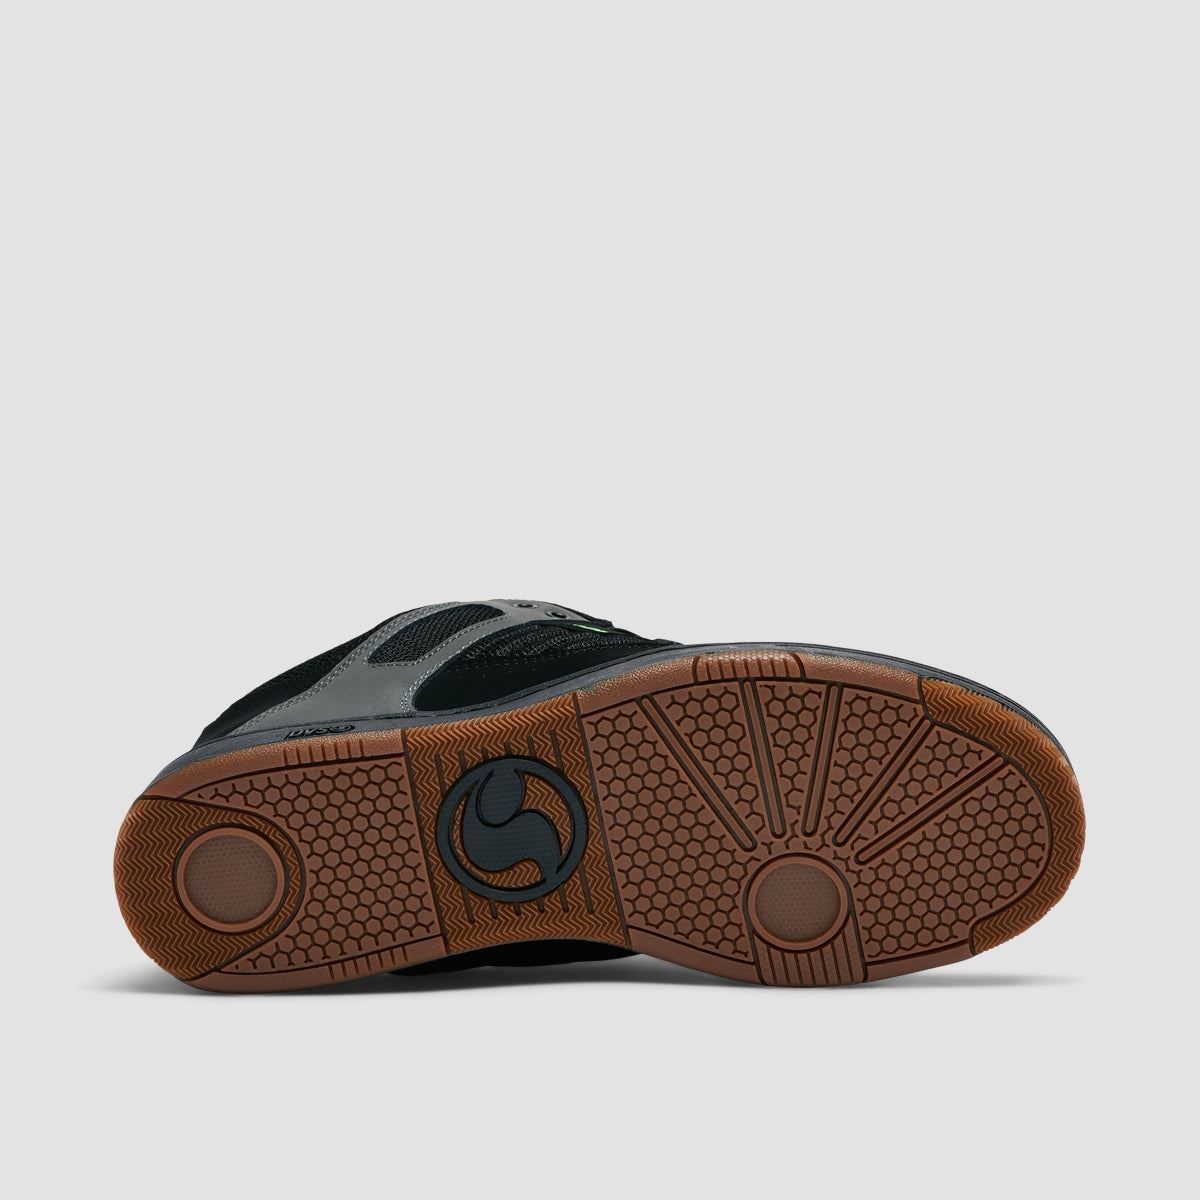 DVS Enduro 125 Shoes - Charcoal/Black/Lime Nubuck